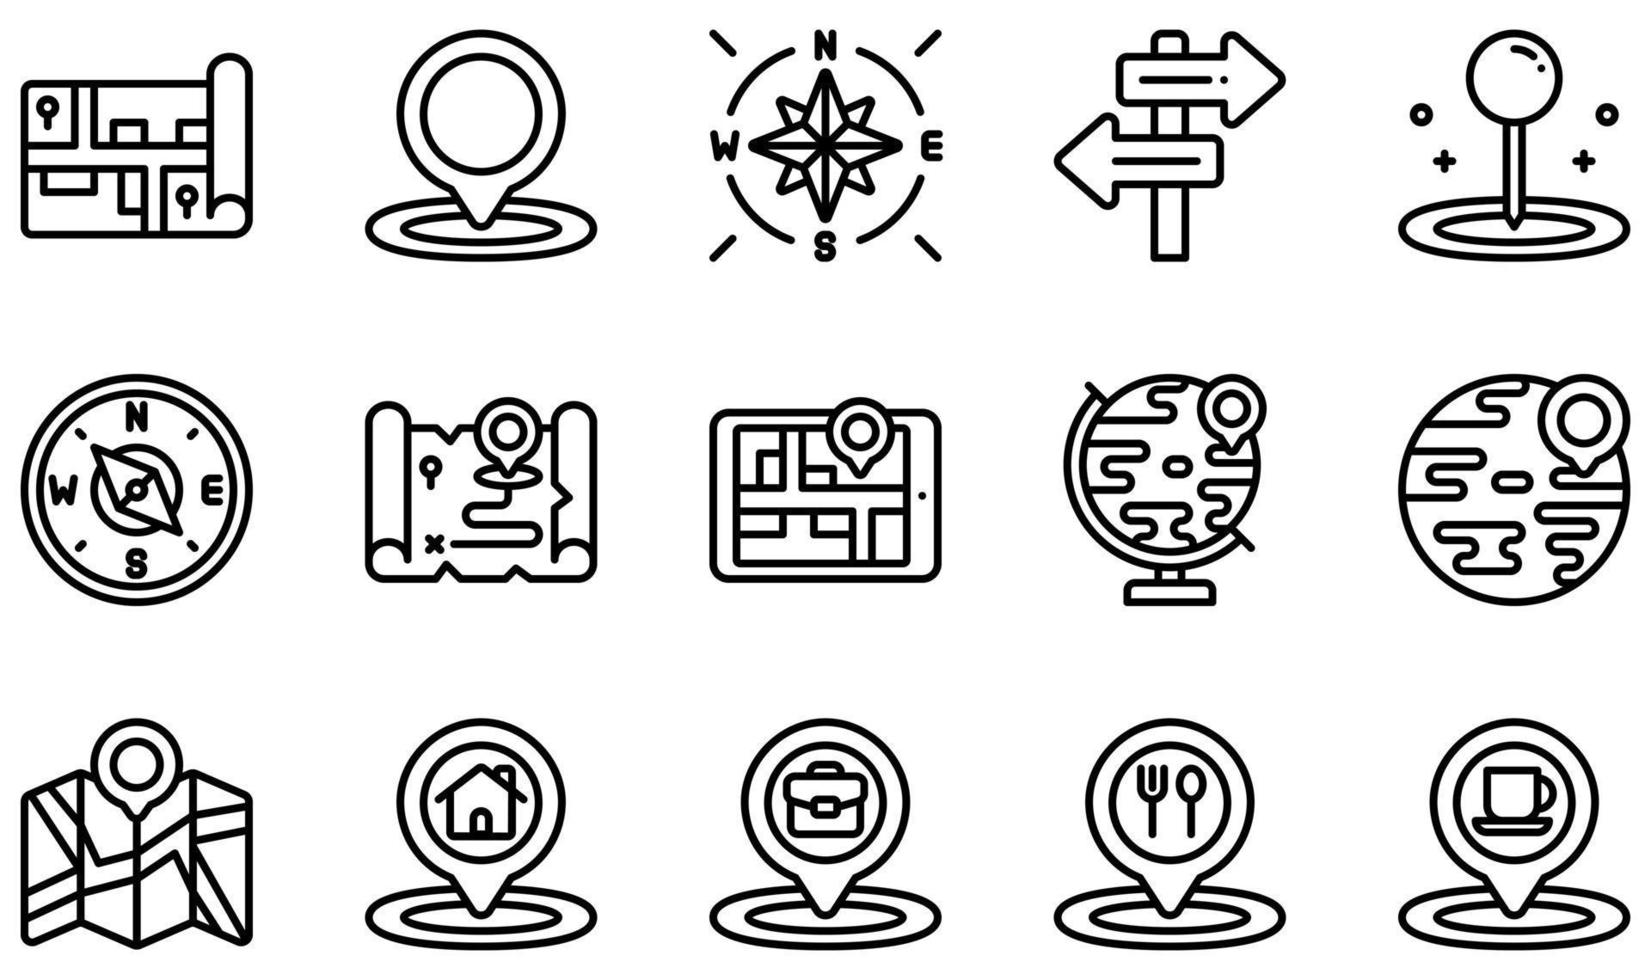 set di icone vettoriali relative a mappe e navigazione. contiene icone come mappa, segnaposto, cardinale, direzione, navigazione, posizione e altro.